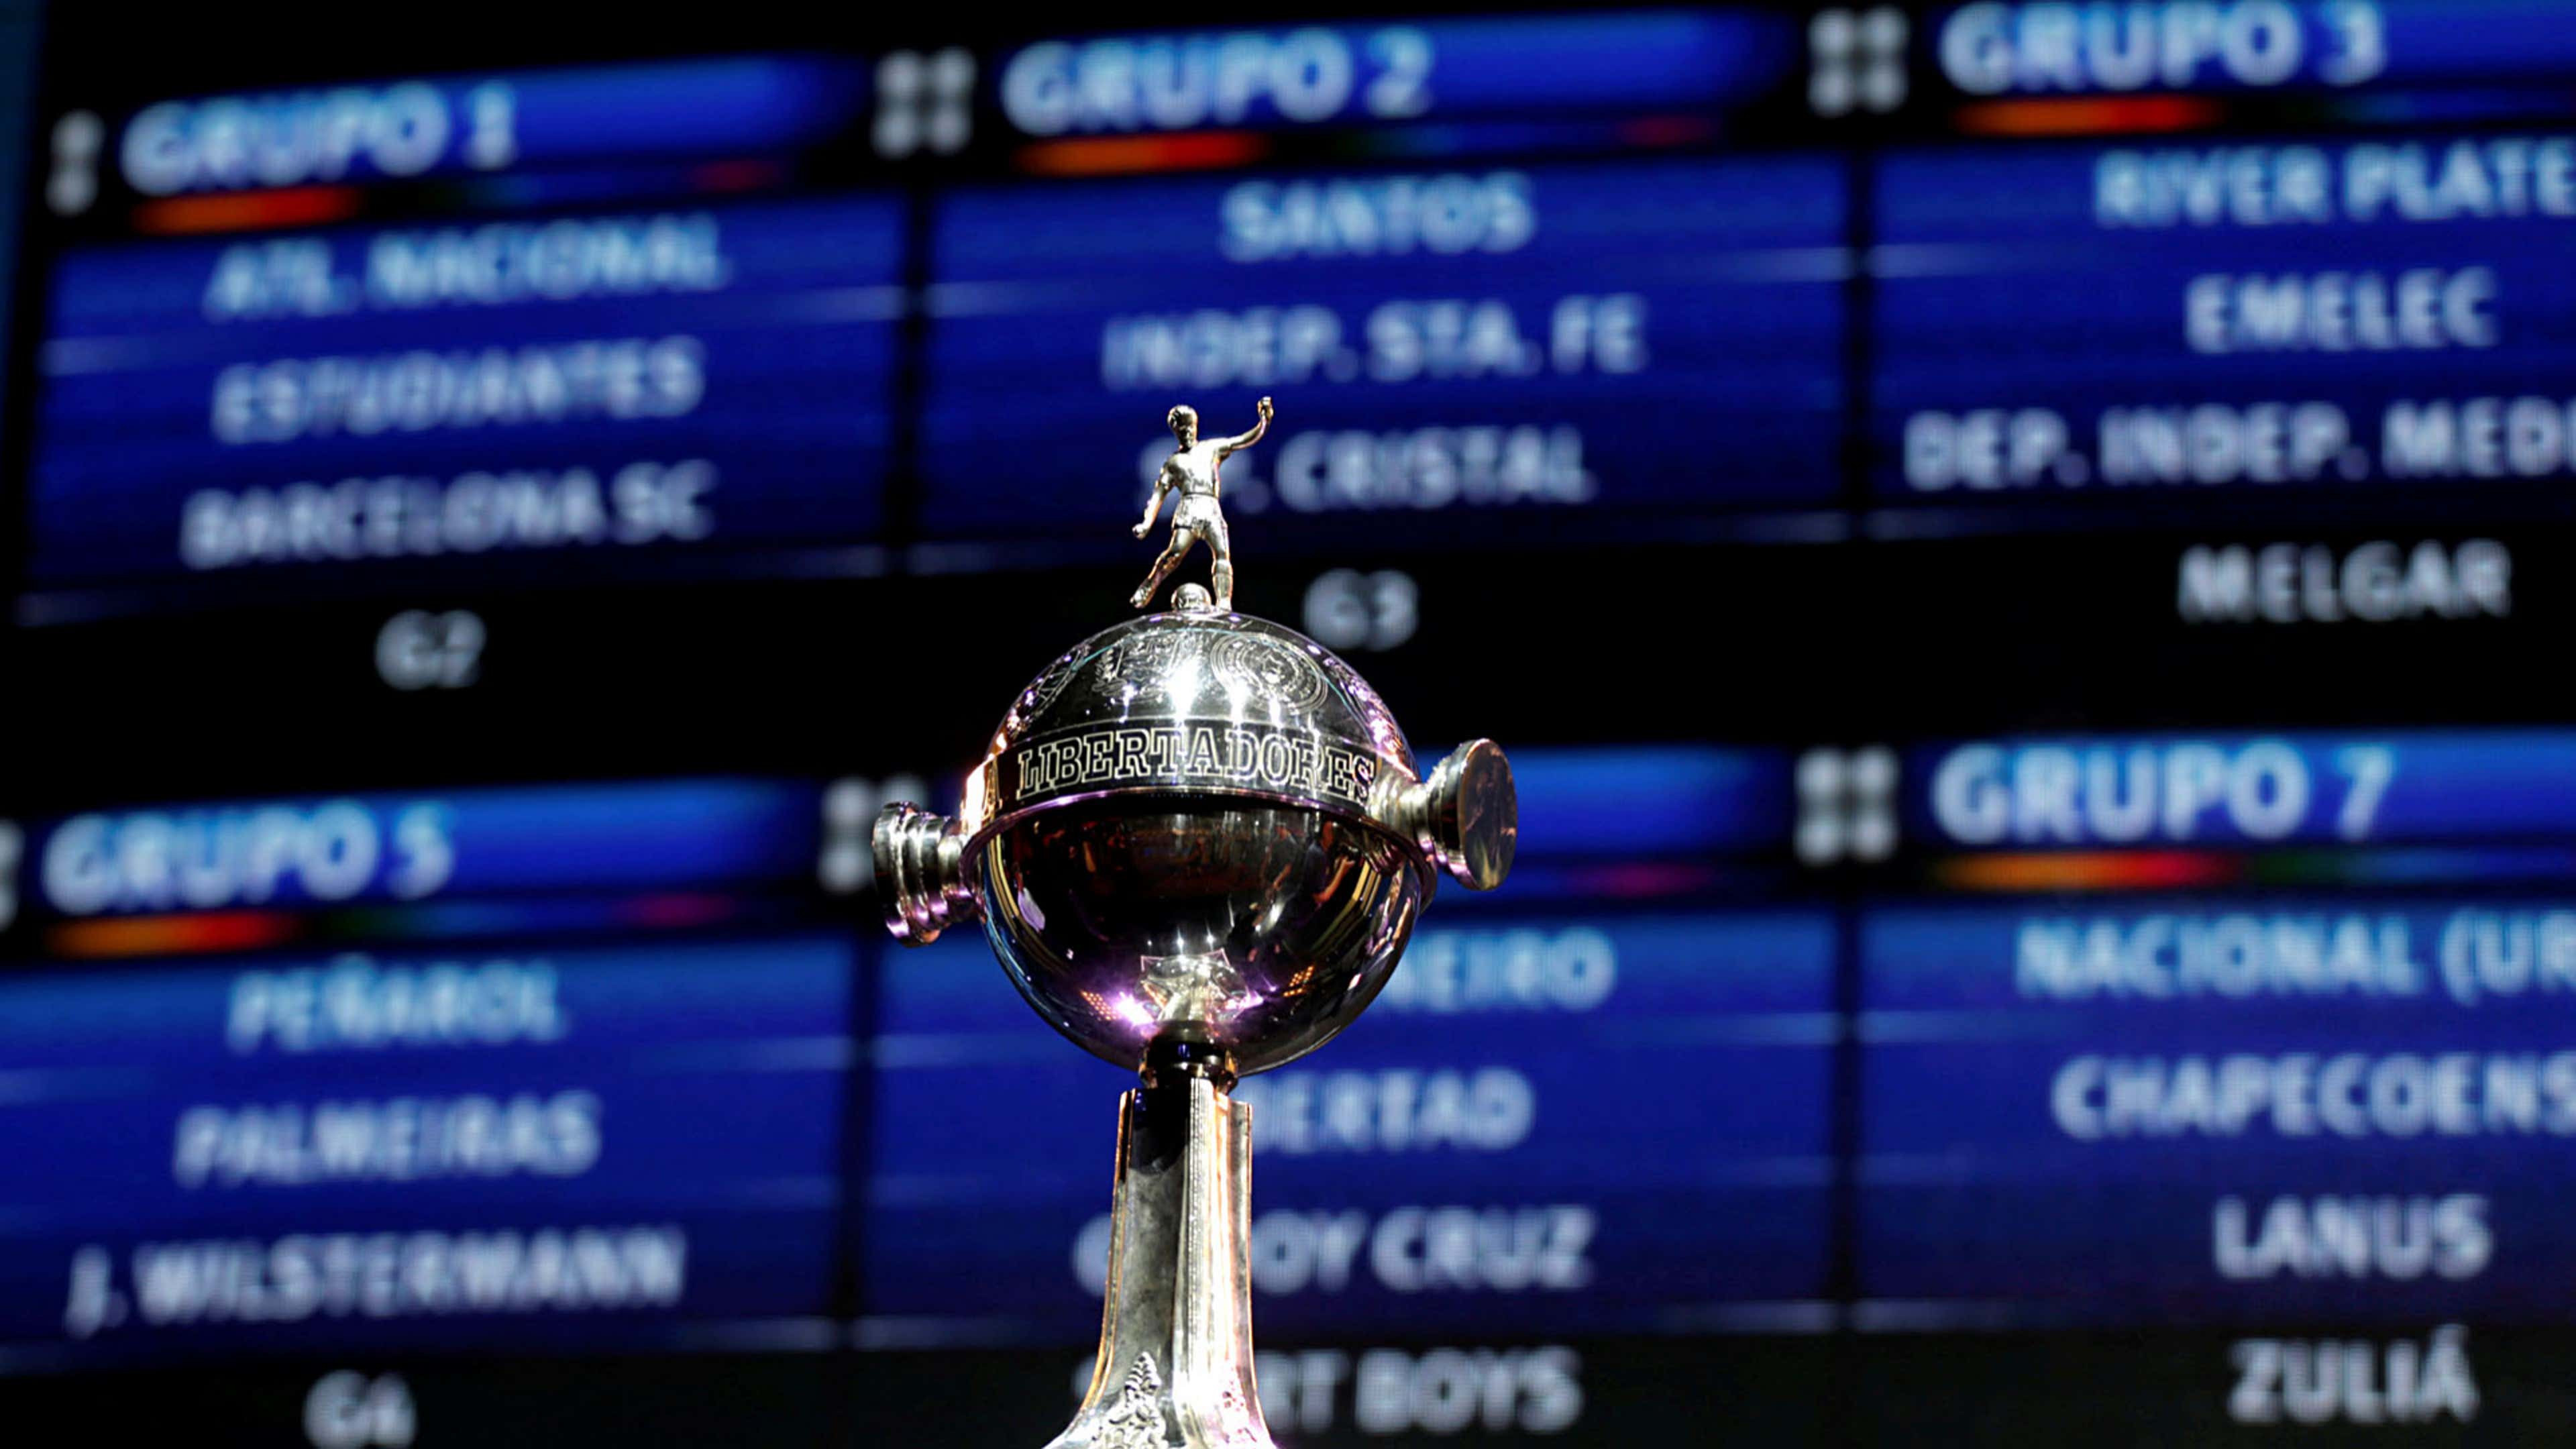 Confira quais jogos da Libertadores serão transmitidos no Facebook